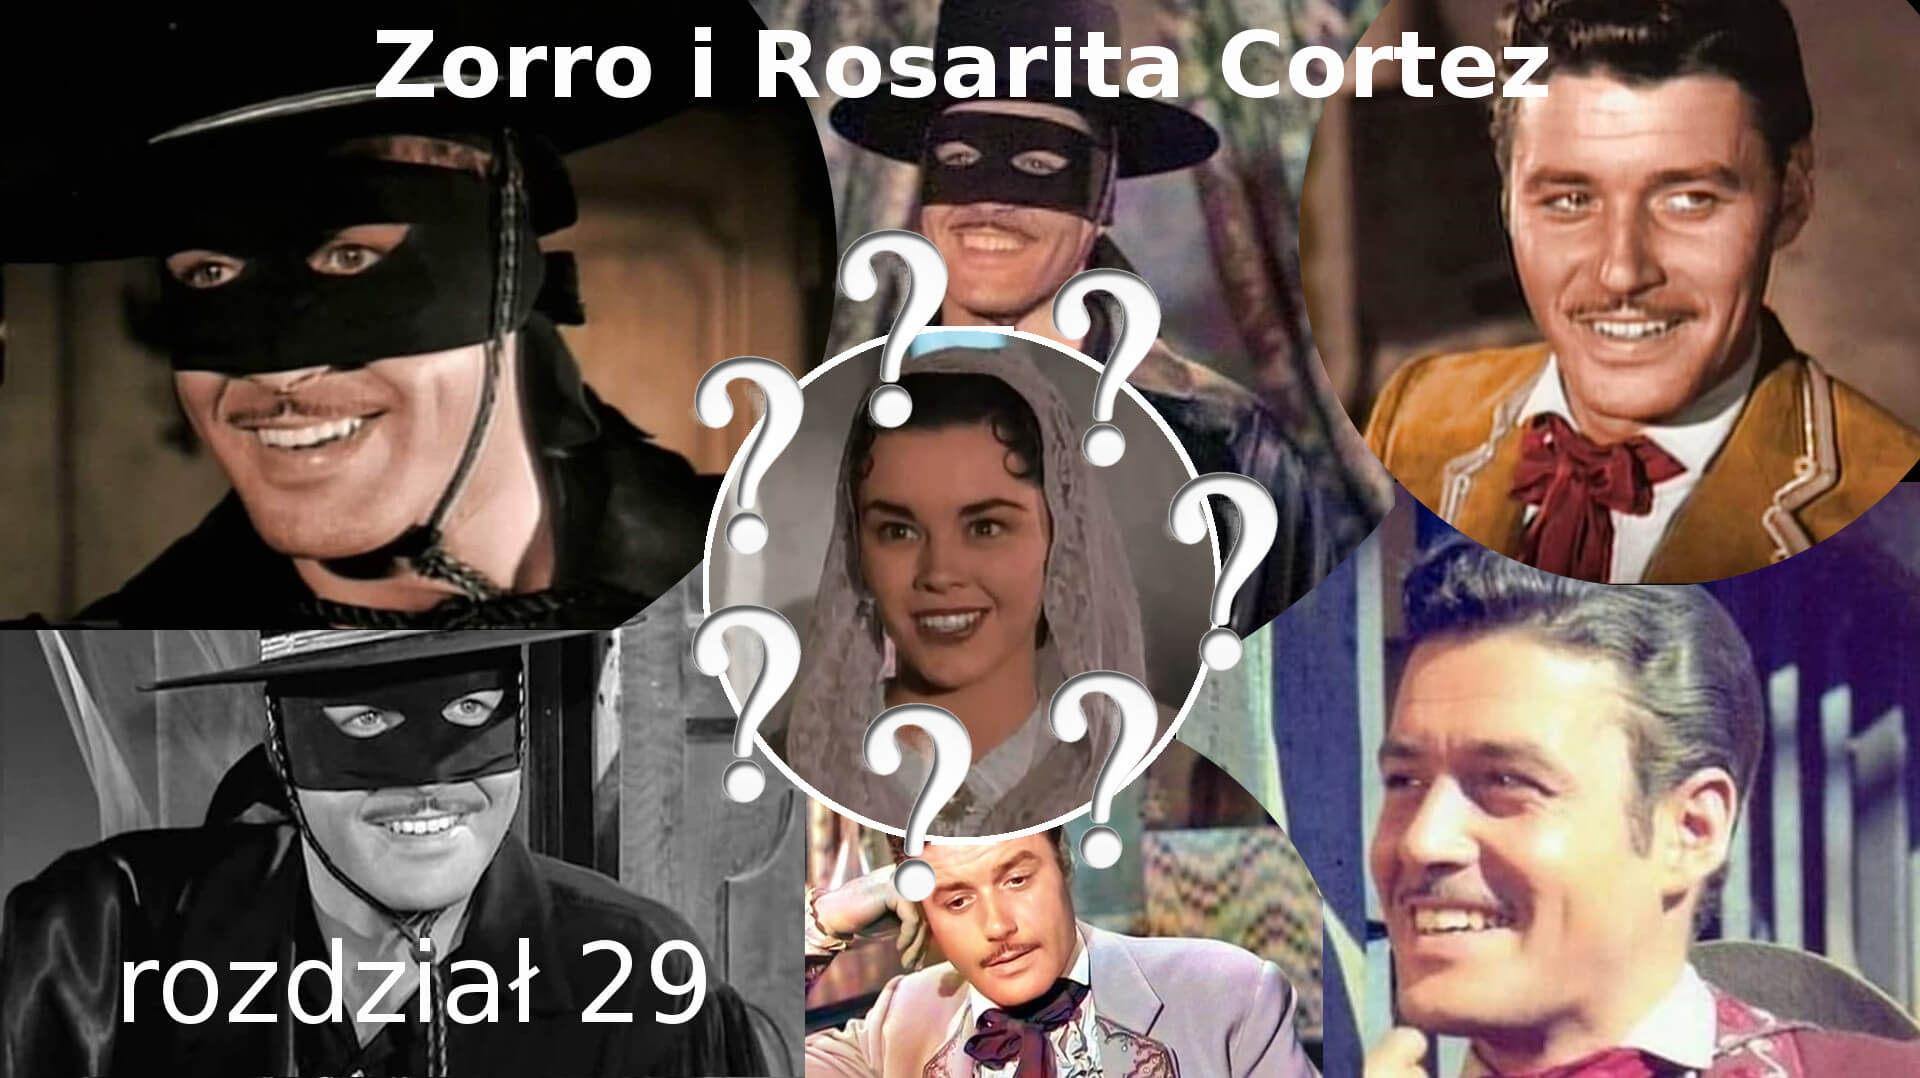 Zorro i Rosarita Cortez rozdział 29 Zorro fanfiction